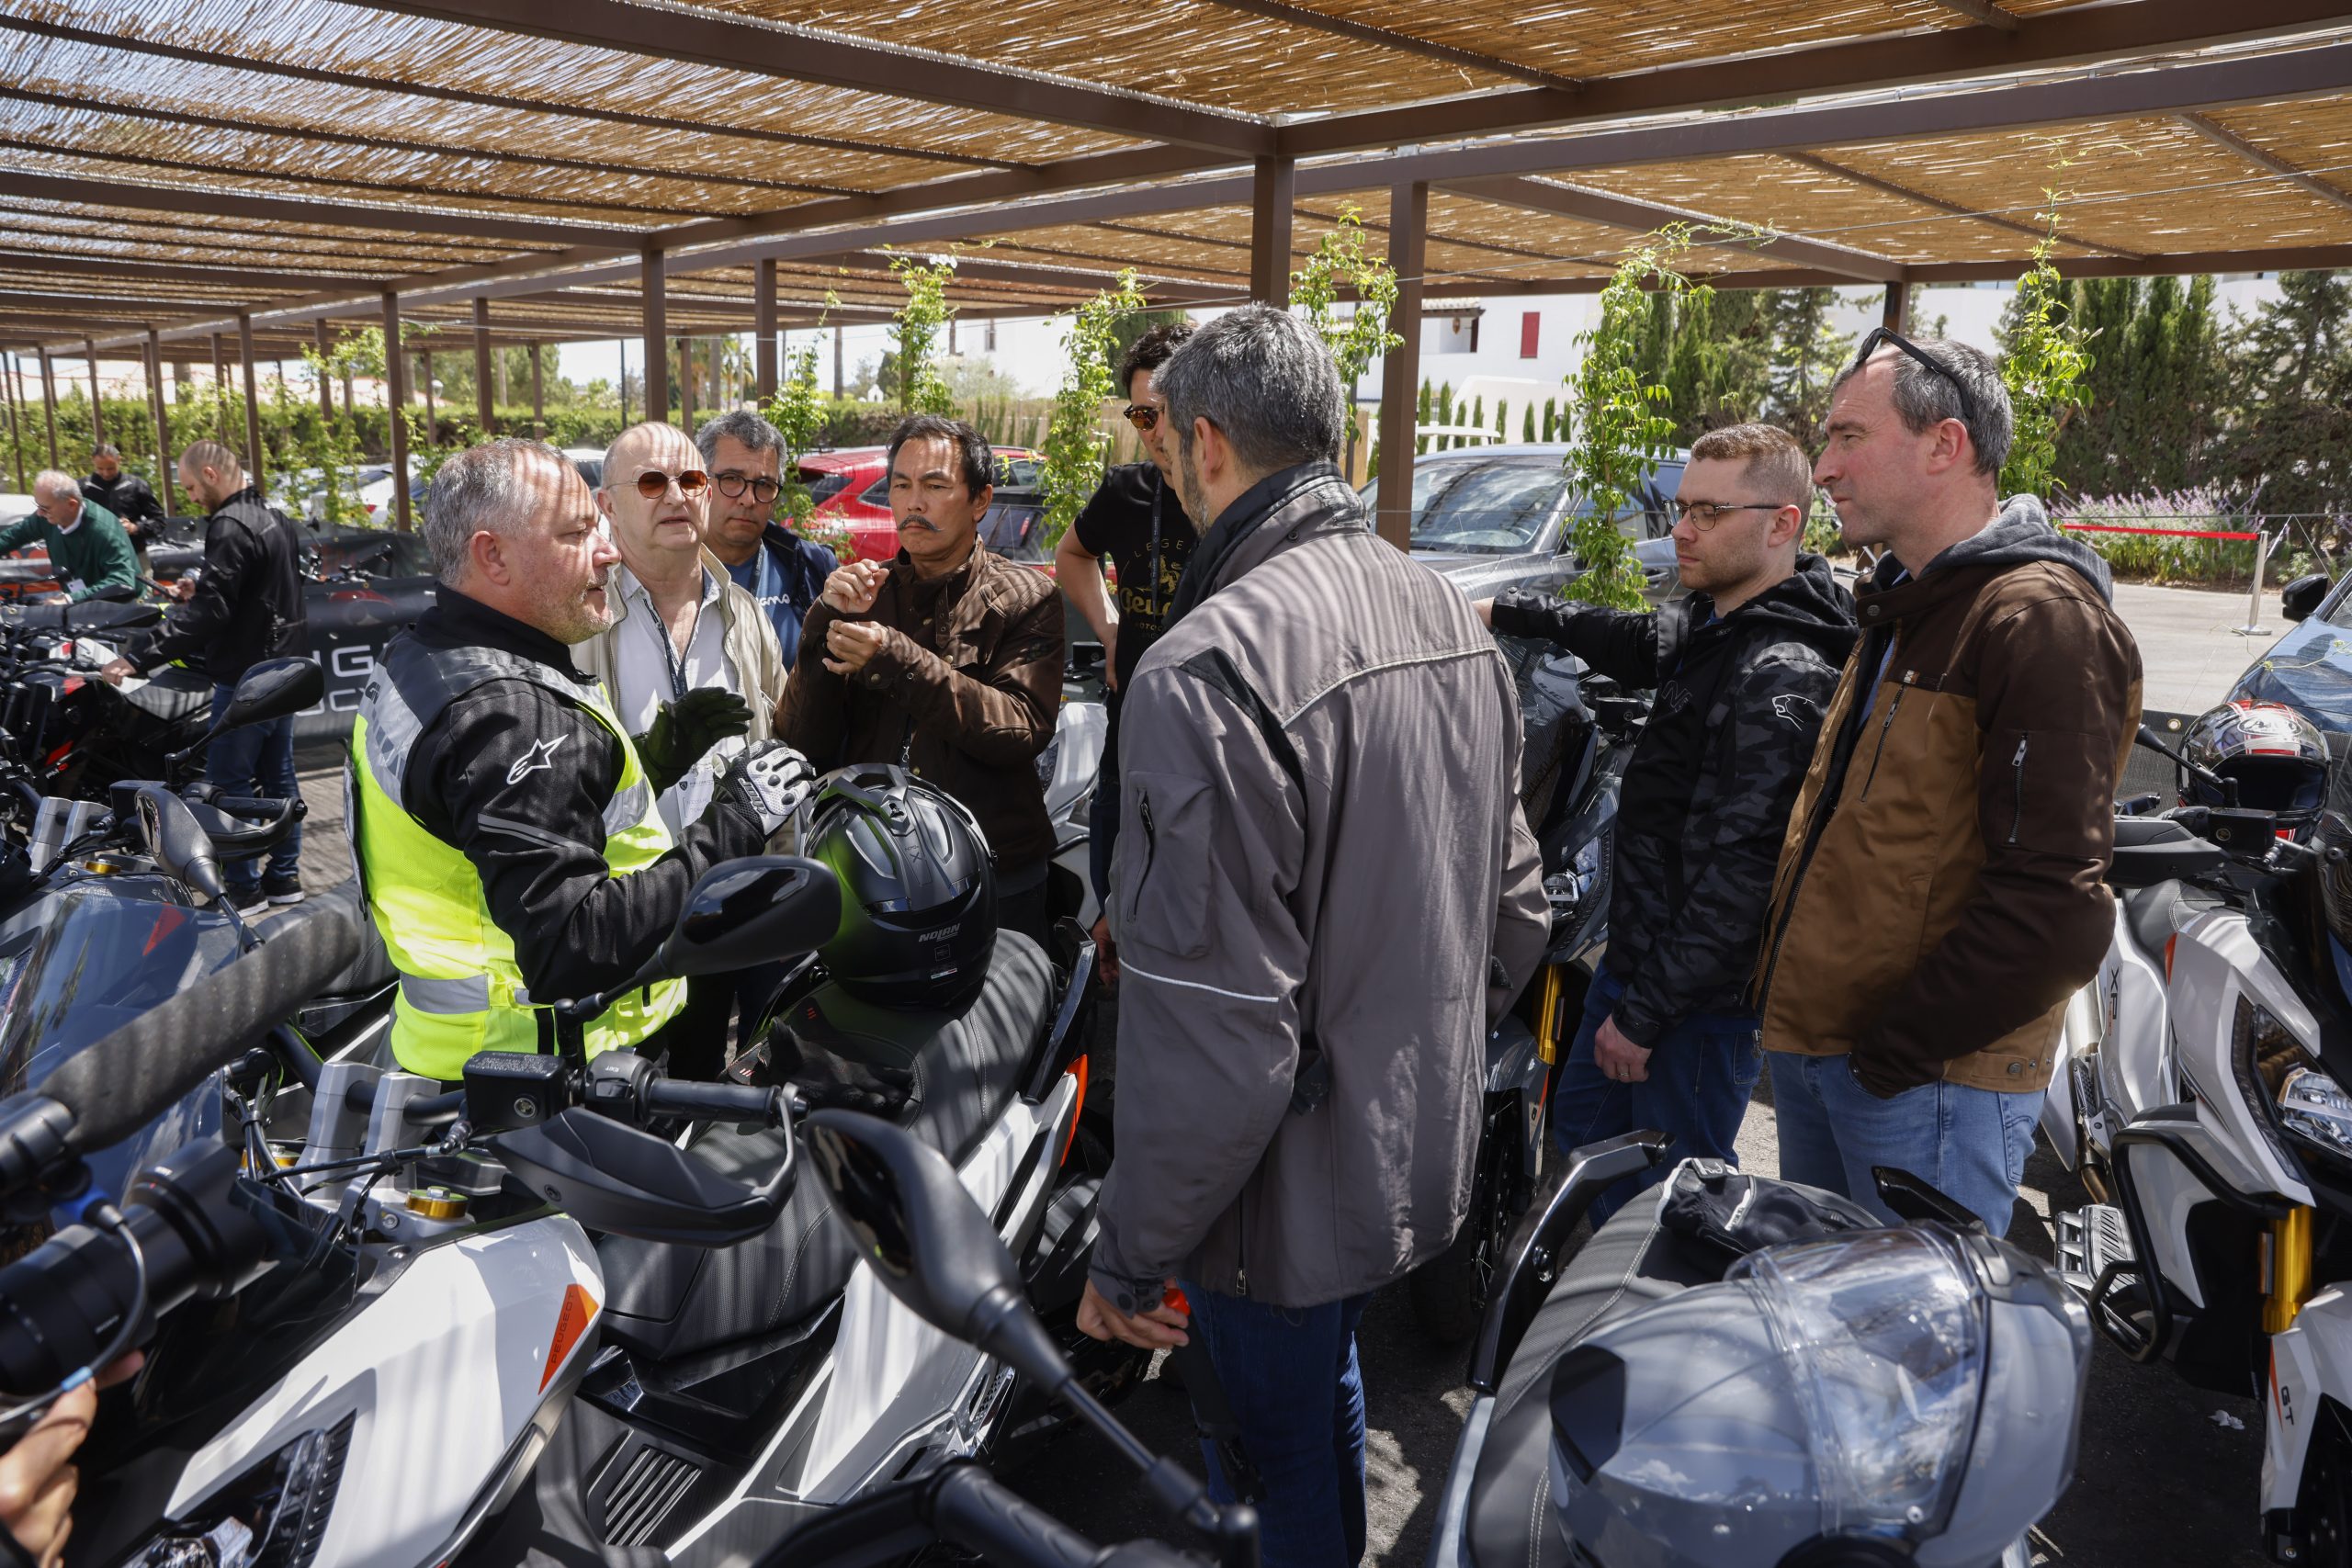 Road Leader del equipo de Peugeot Motocycles explicando a la prensa interrnacional el briefing de la ruta en moto